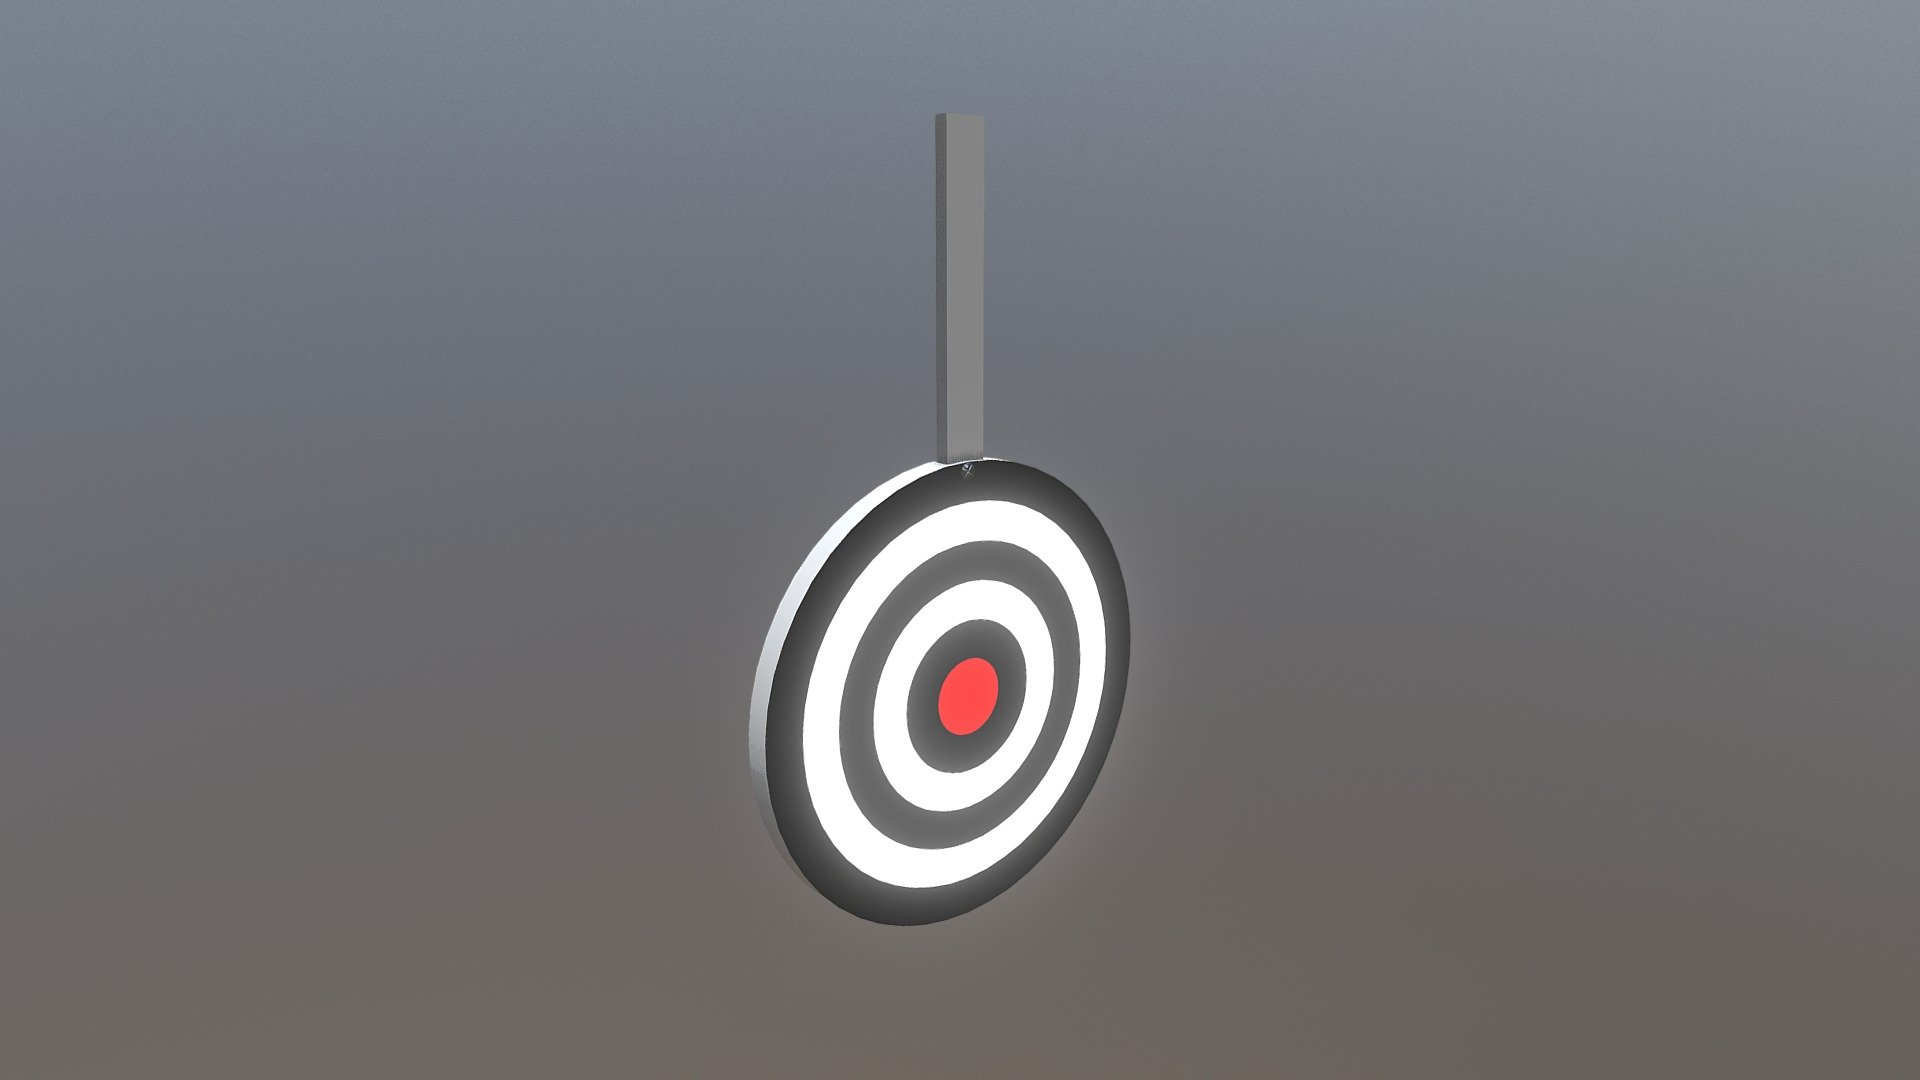 Simple Shooting Range Target.